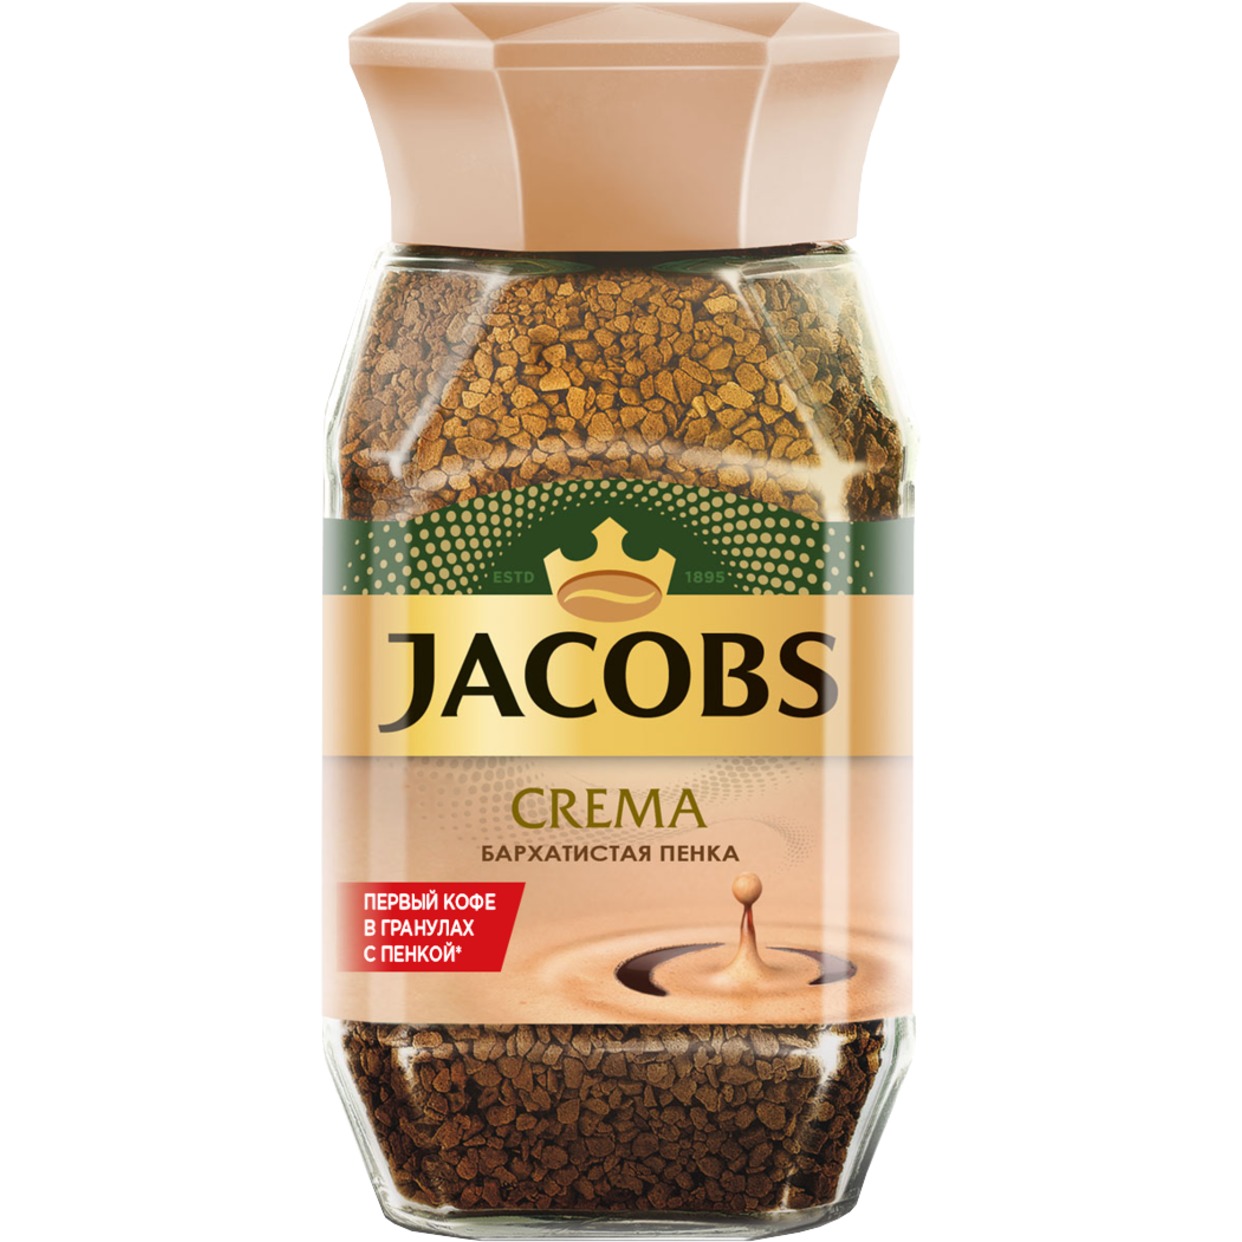 Кофе Jacobs Crema, растворимый, 95 г по акции в Пятерочке